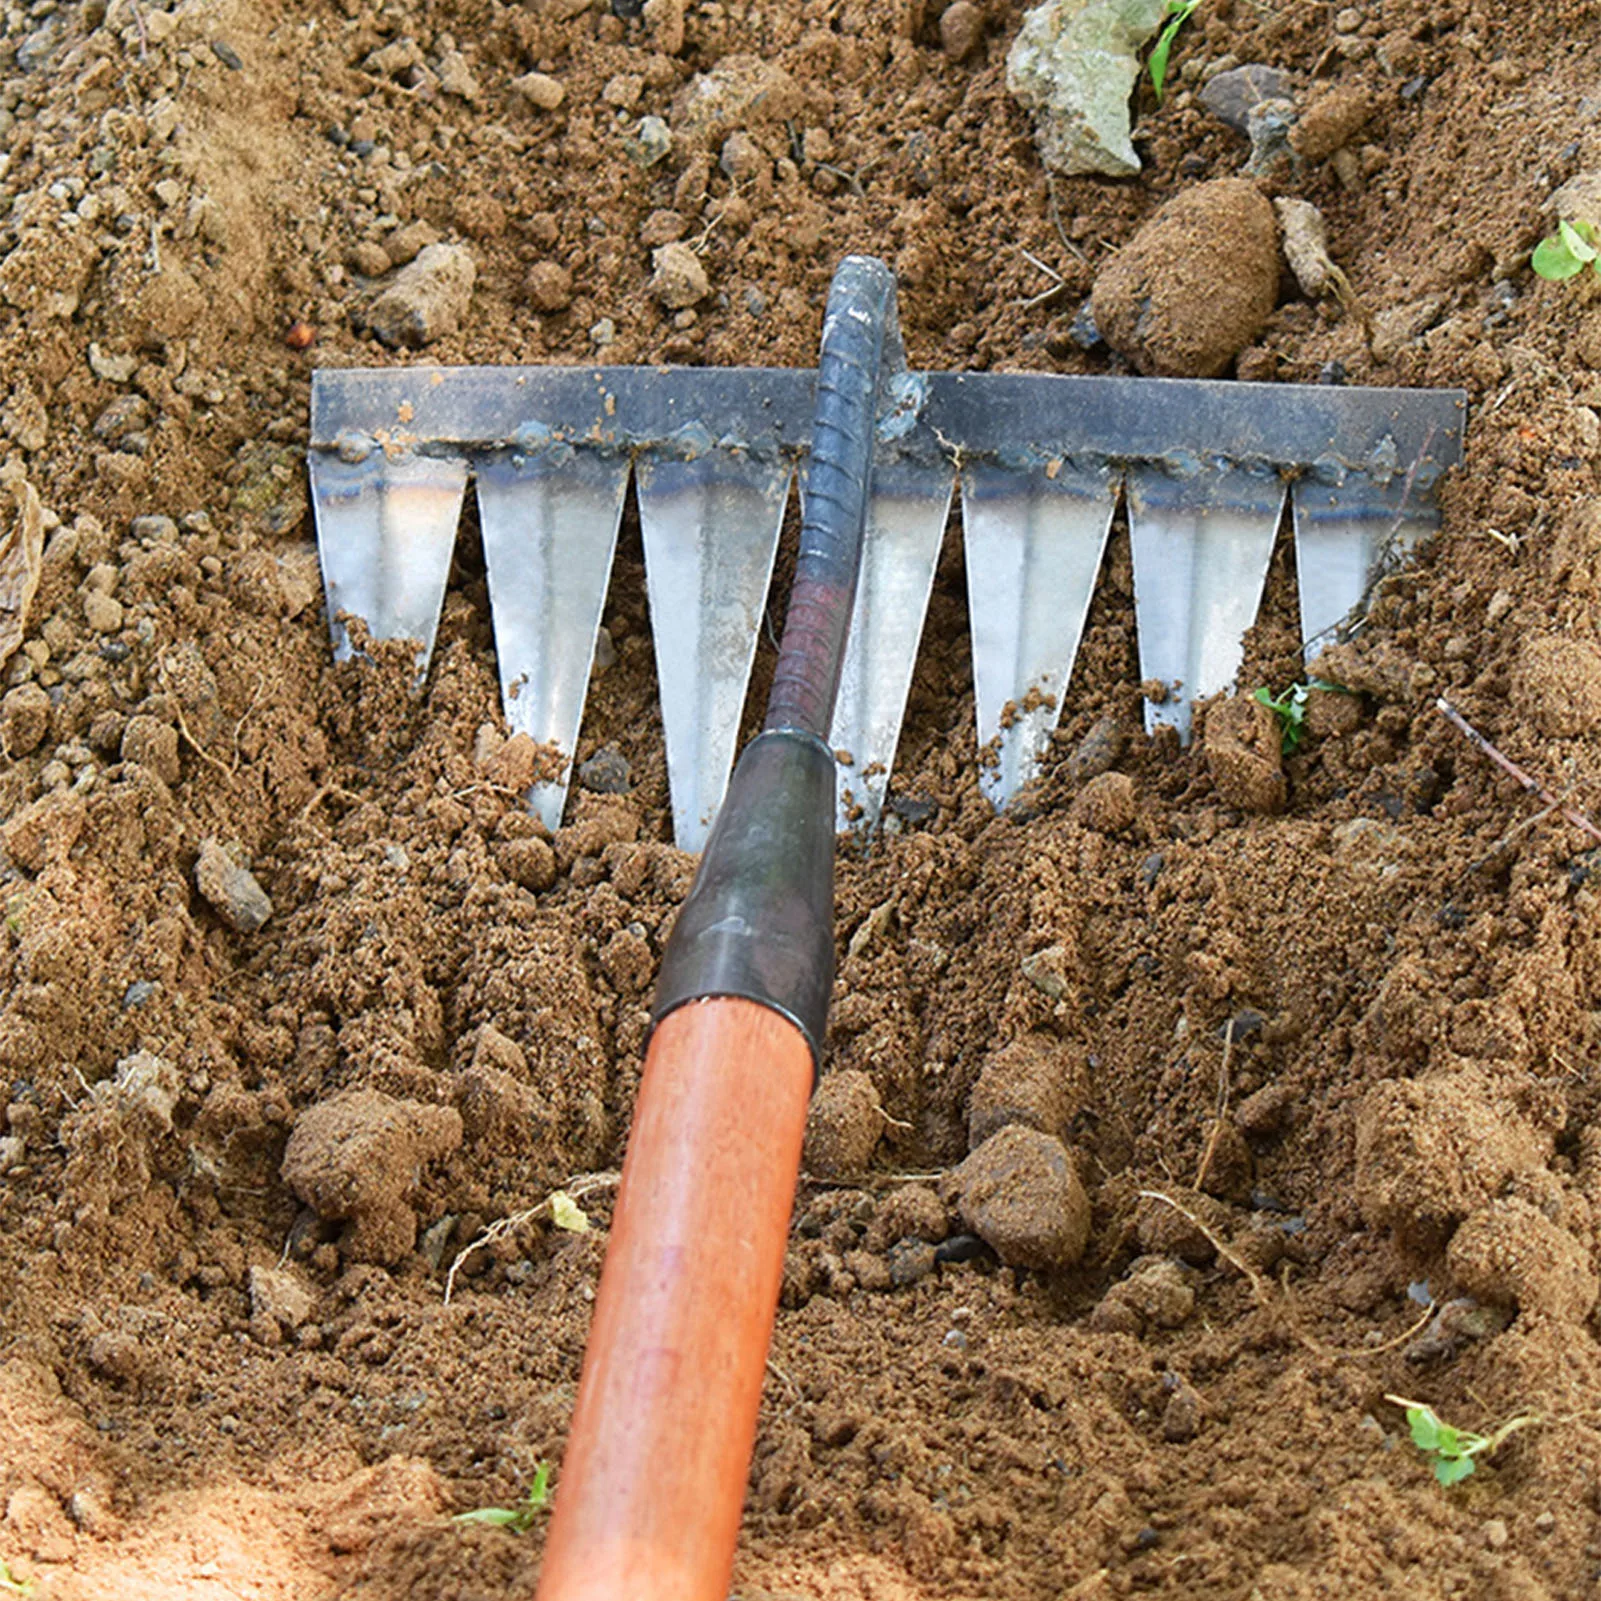 

Gardening Sharp Tines Rake High Hardness Effective Garden Rake for Weeding Ditching Loosening Soil Hand Hoe Gardening Tools